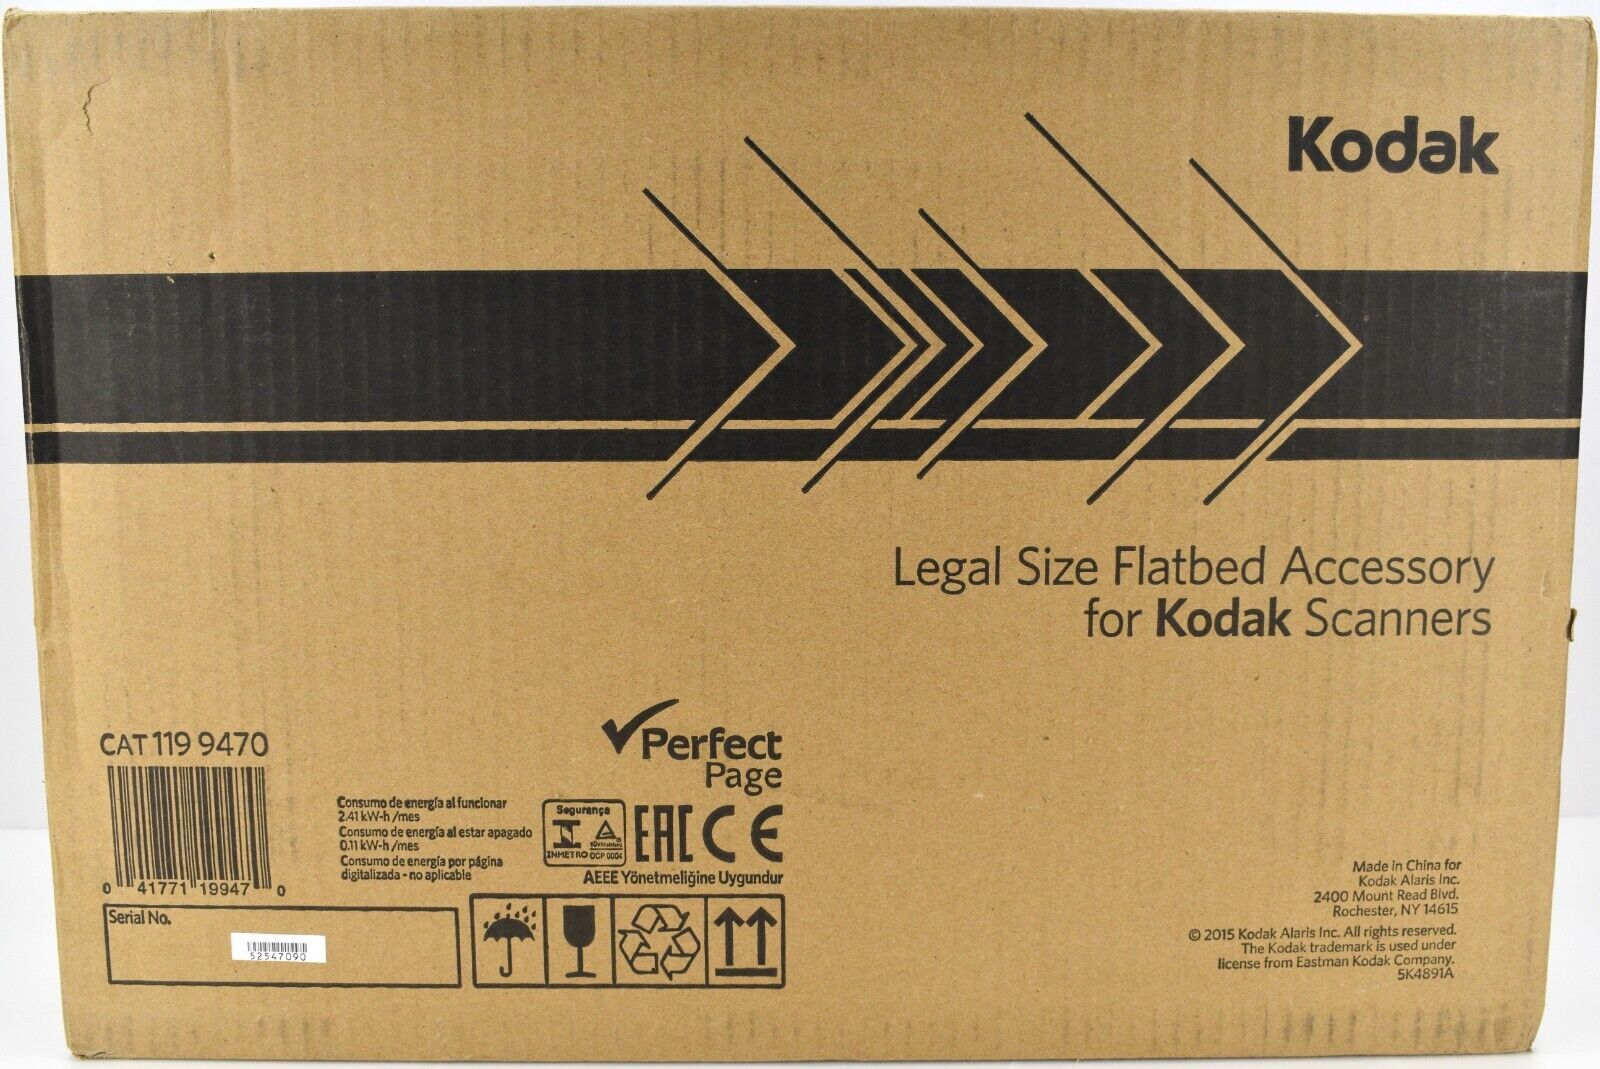 Kodak 1199470 legal Size Flatbed Accessory for Kodak Scanners